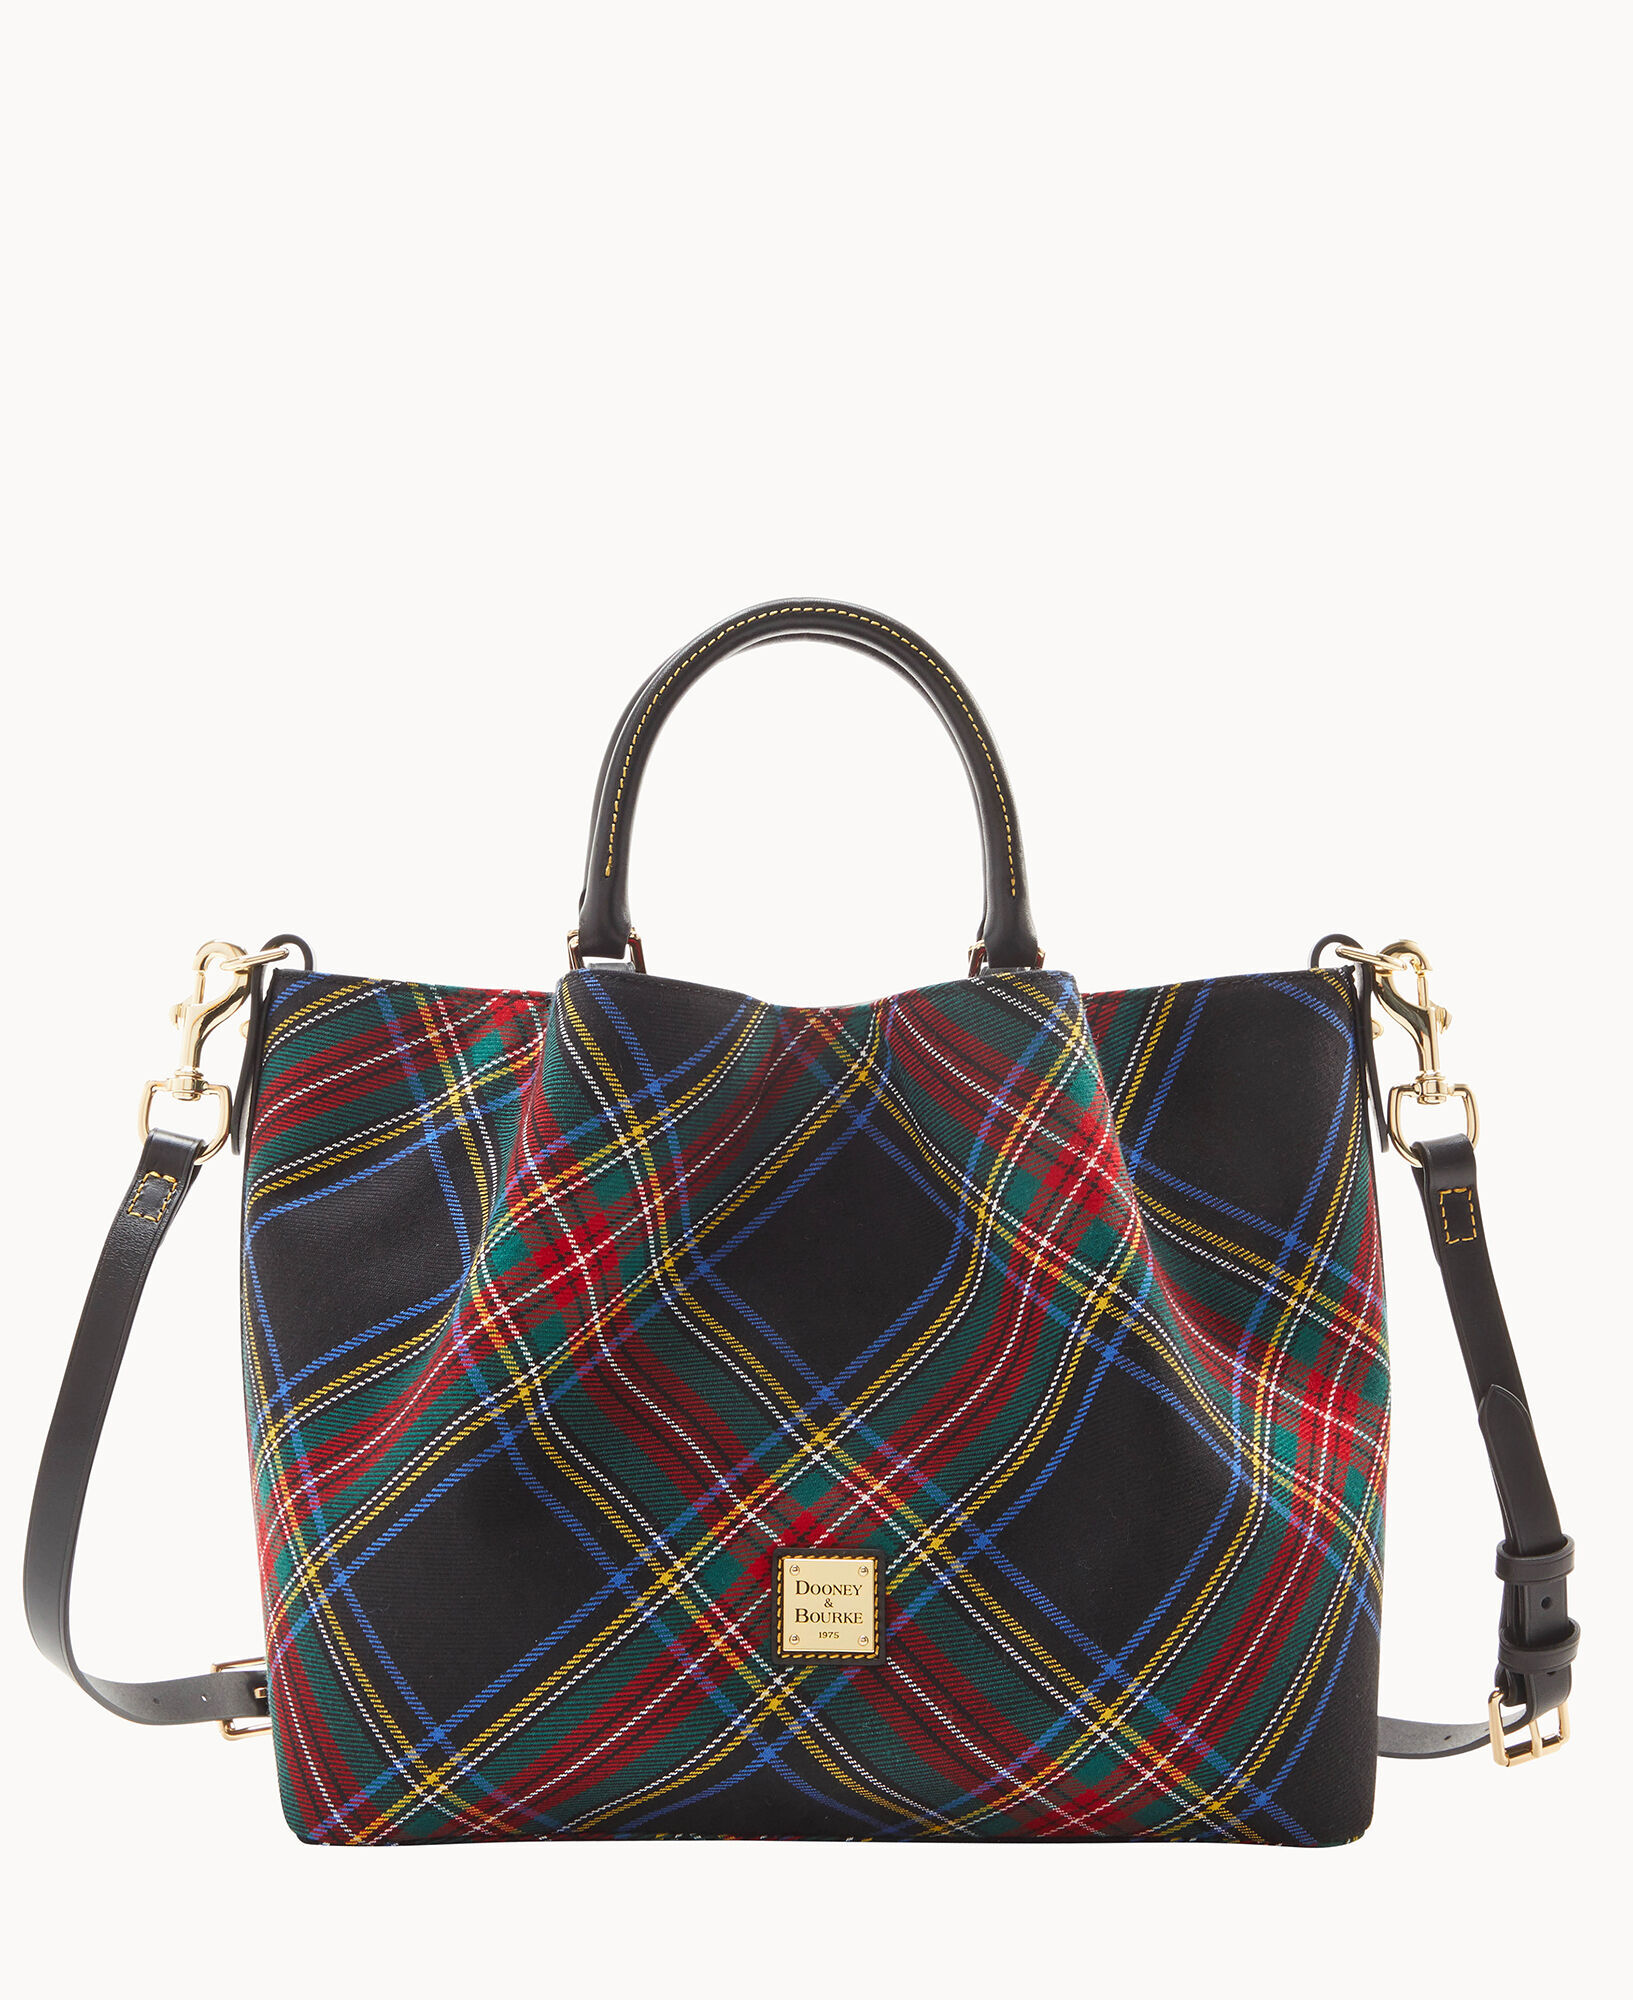 Shop Crossbodies - Luxury Bags & Goods | Dooney & Bourke